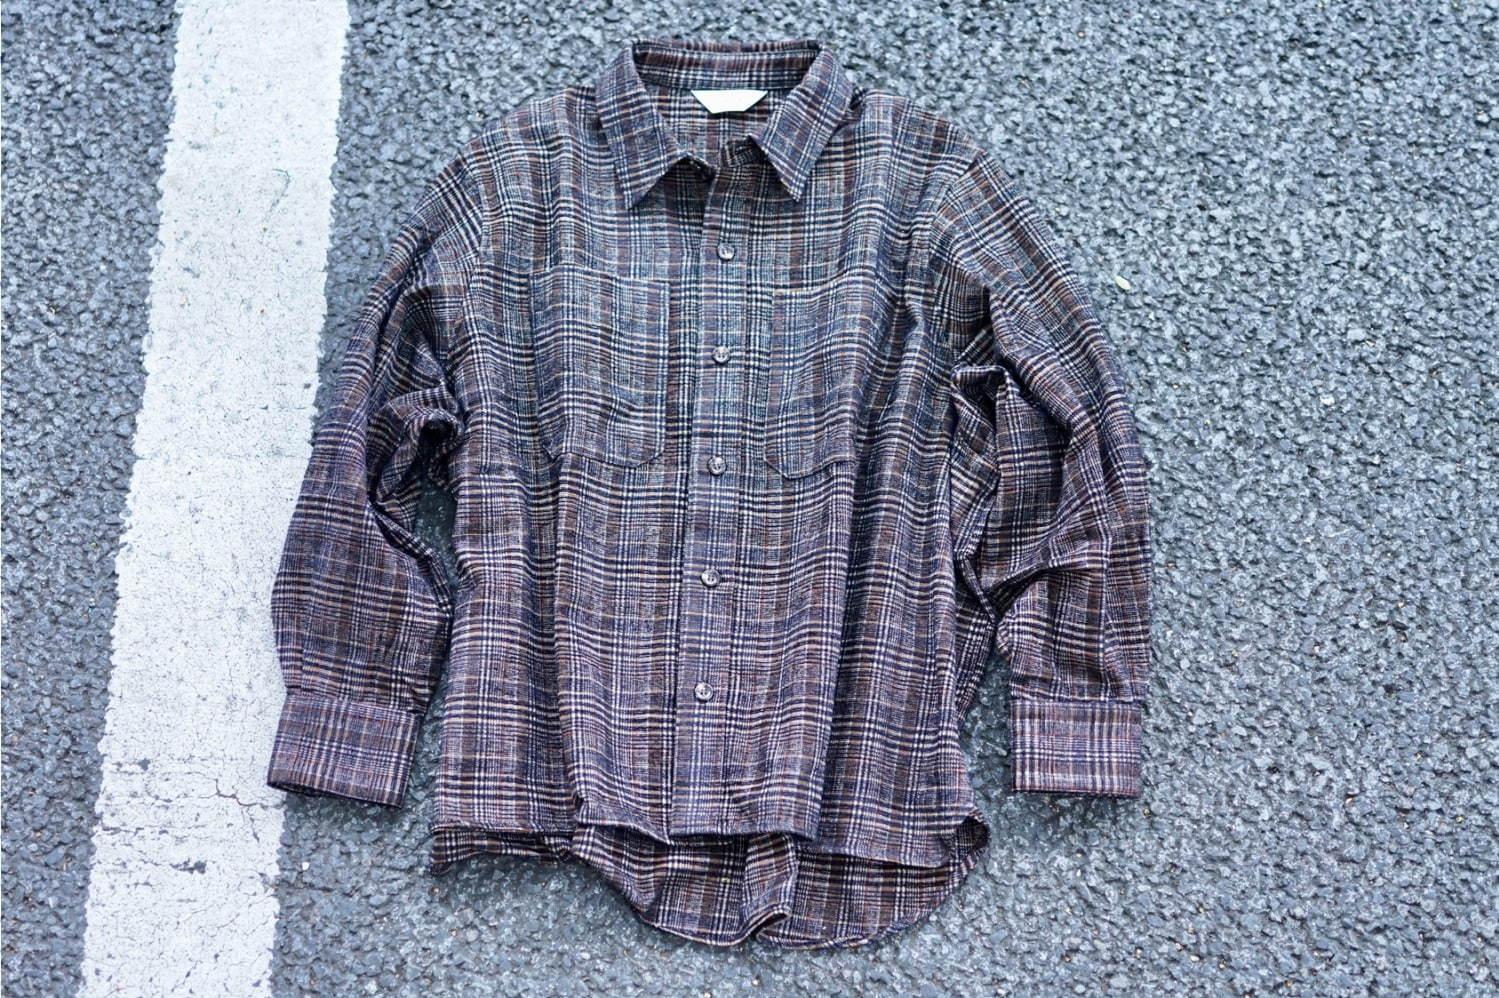 ジエダ×パルプのコラボメンズシャツ、ロング丈のオリジナルパターン＆ツイード生地 コピー